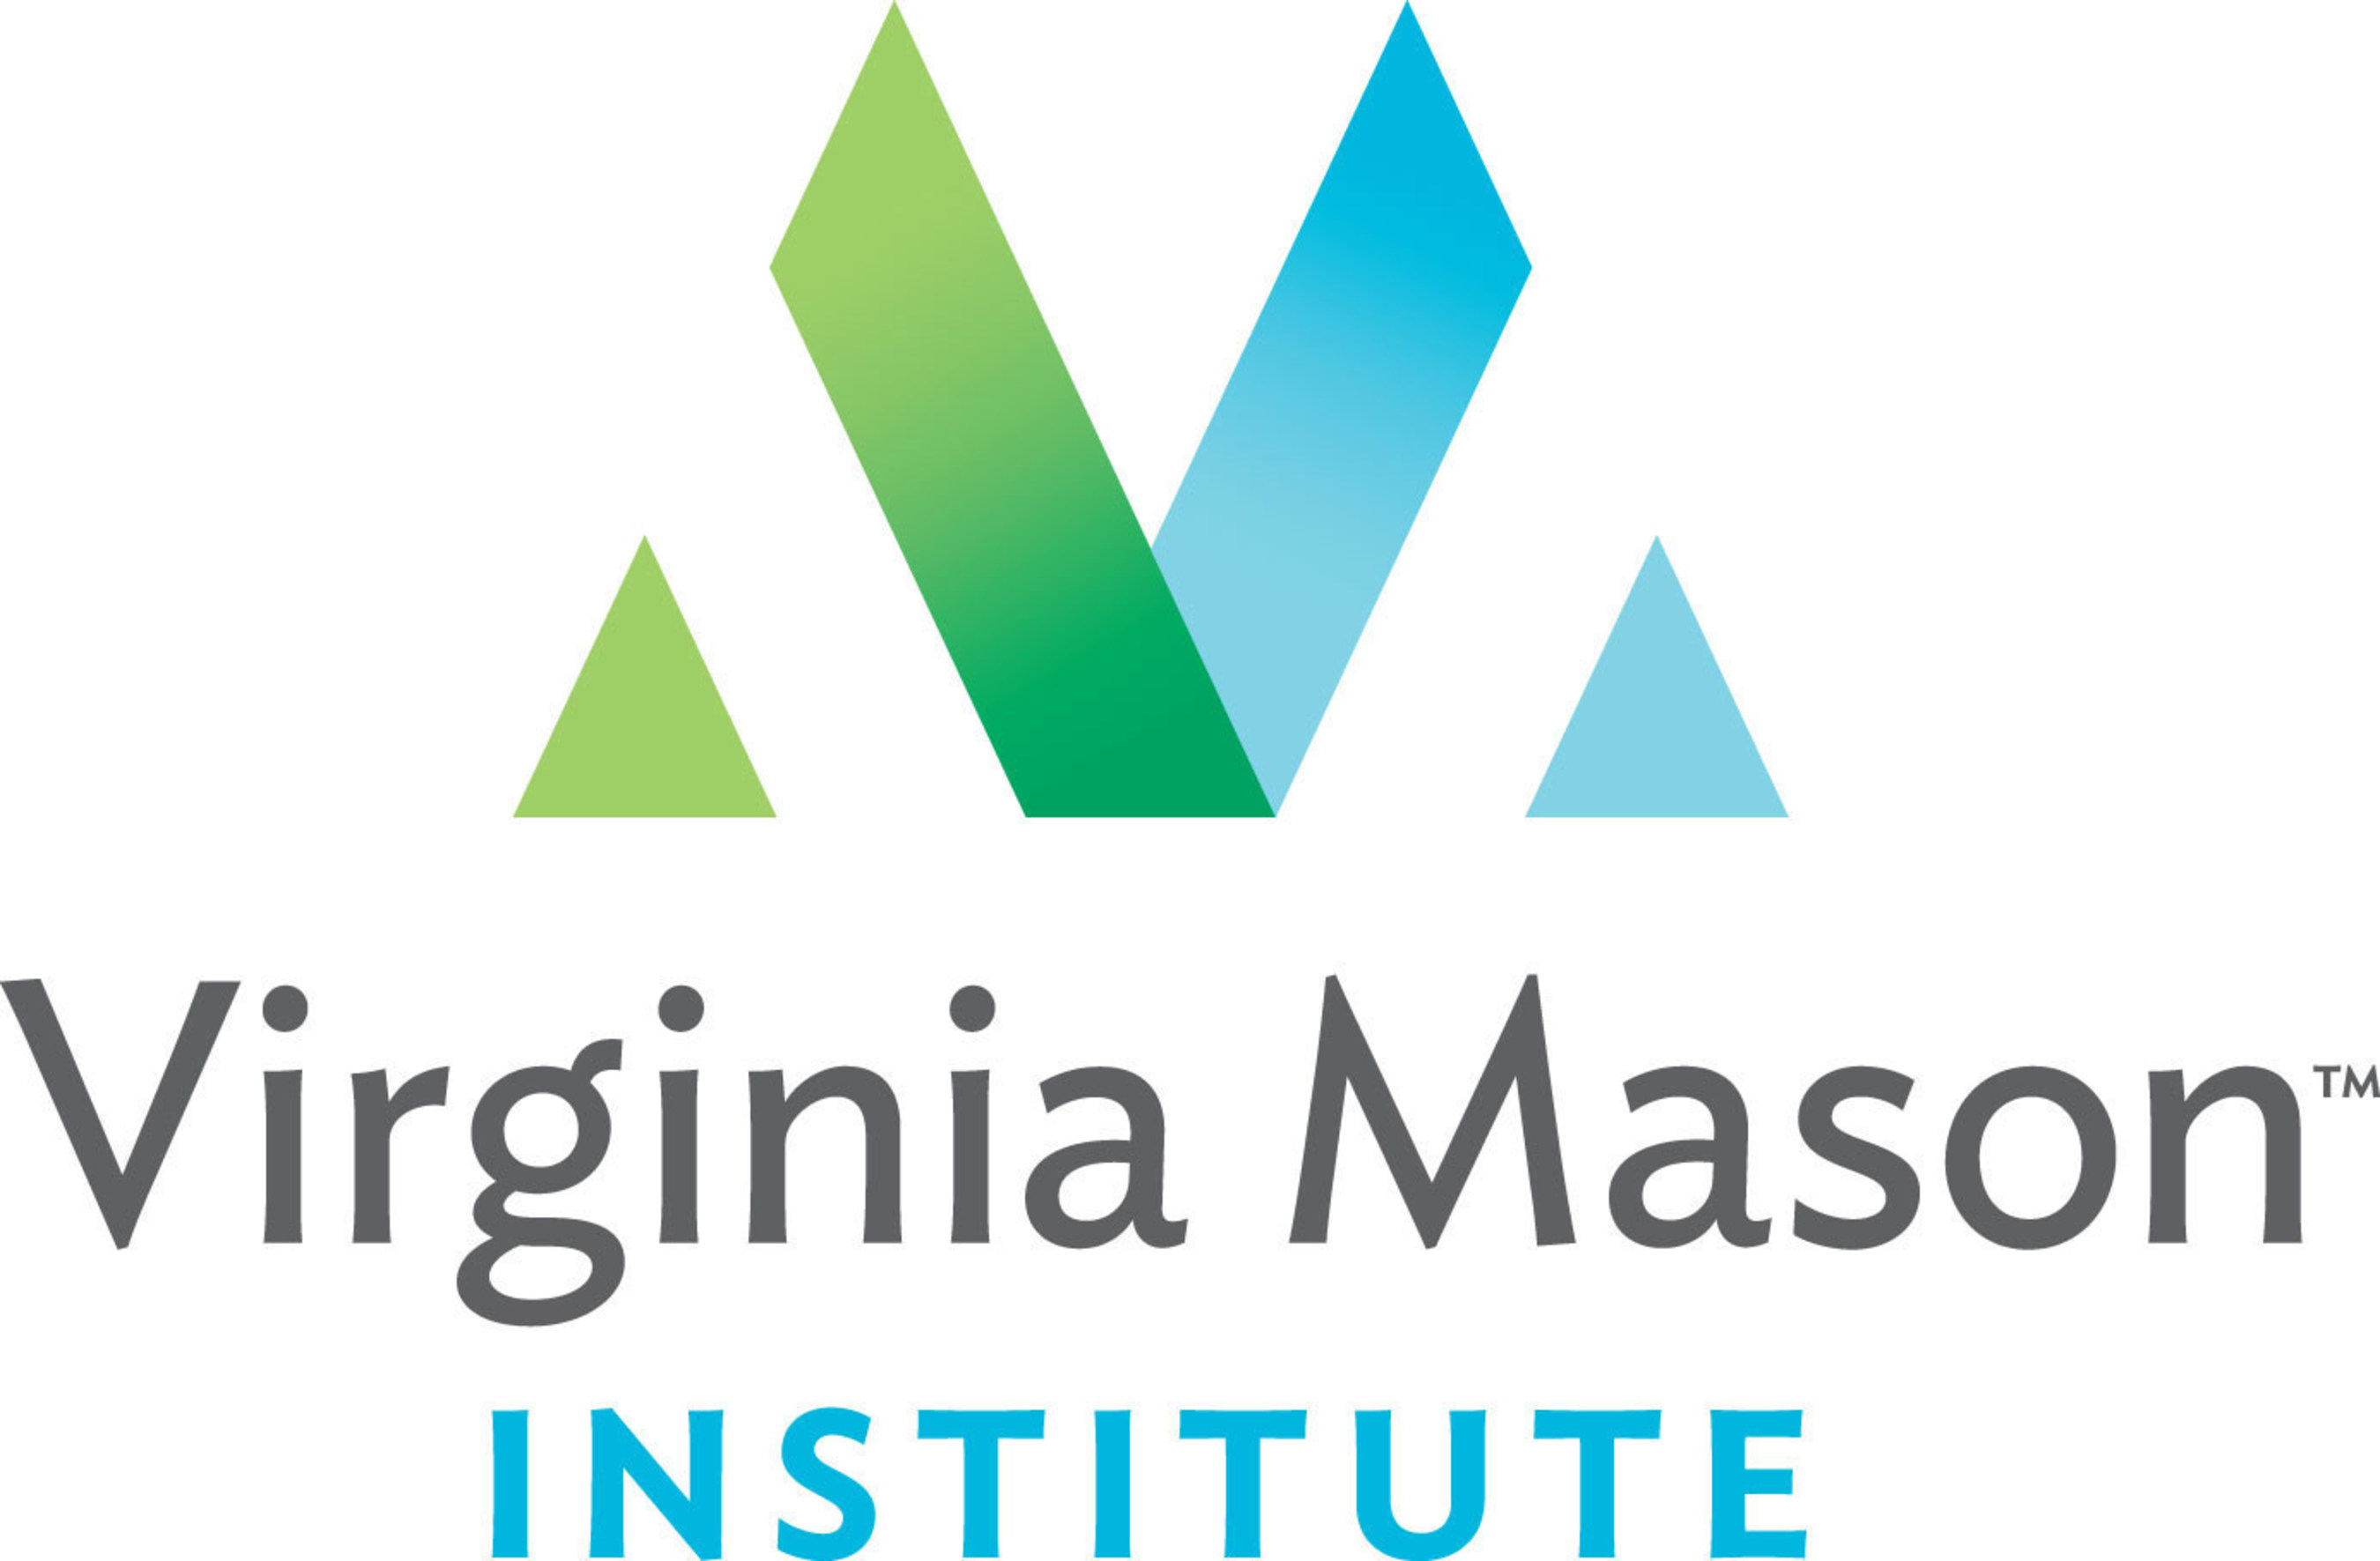 Virginia Mason Institute - Transformation of Health Care (PRNewsFoto/Virginia Mason Institute)